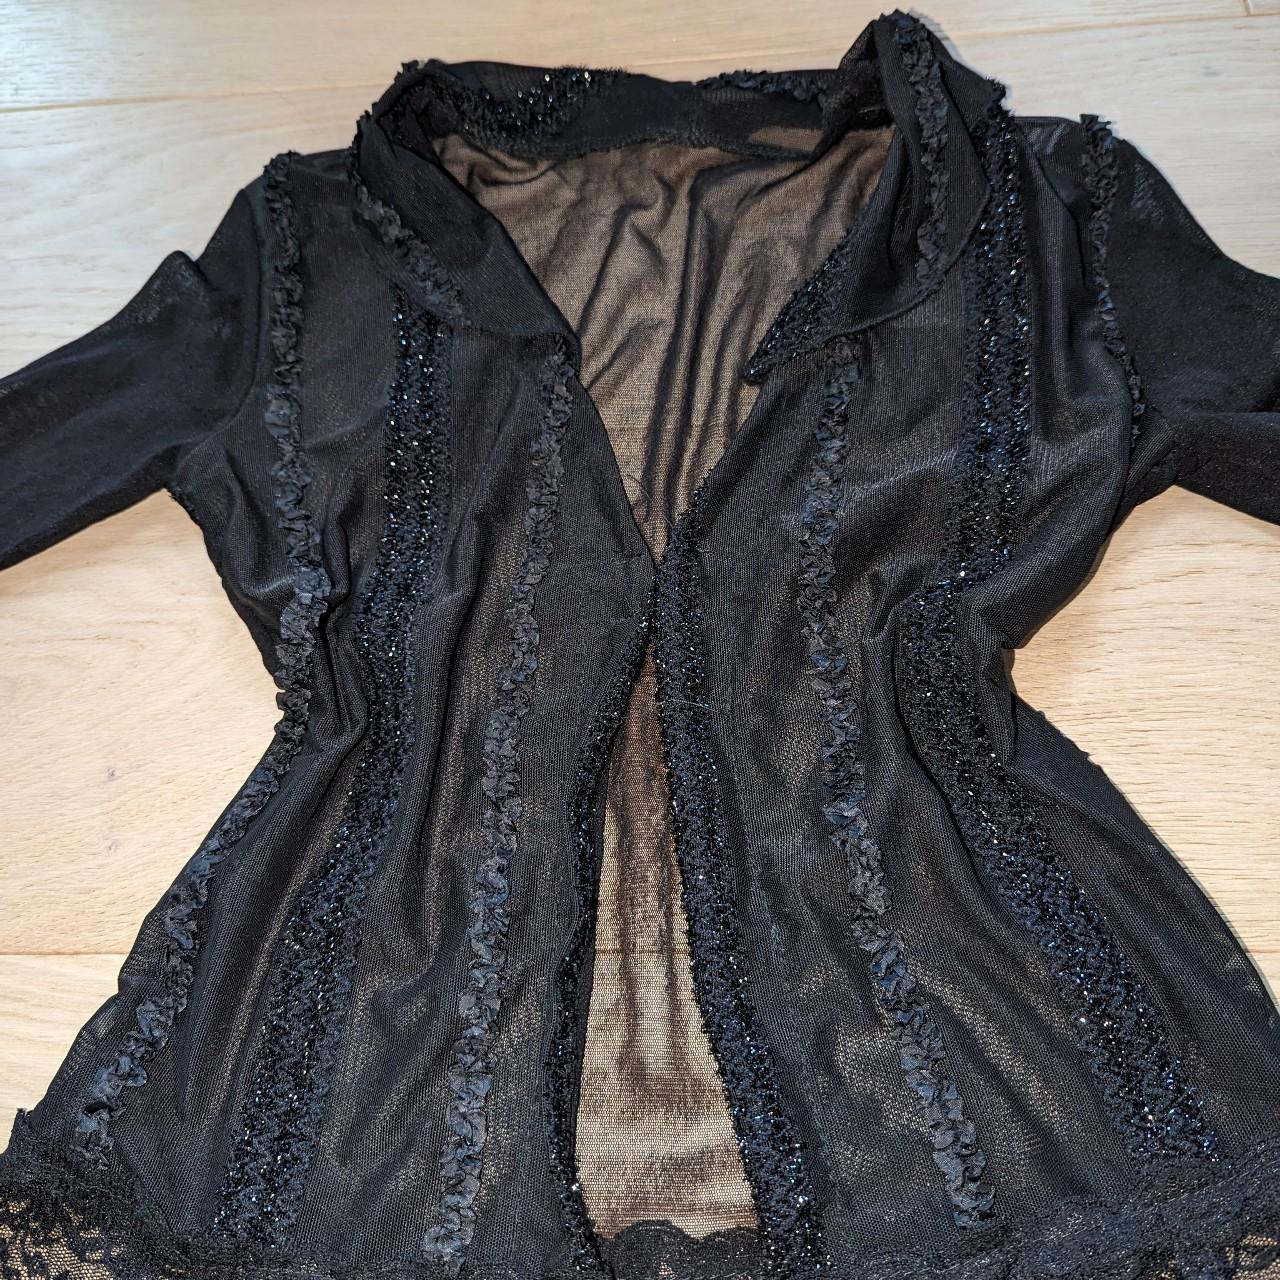 Vintage sheer mesh black top This vintage blouse is... - Depop